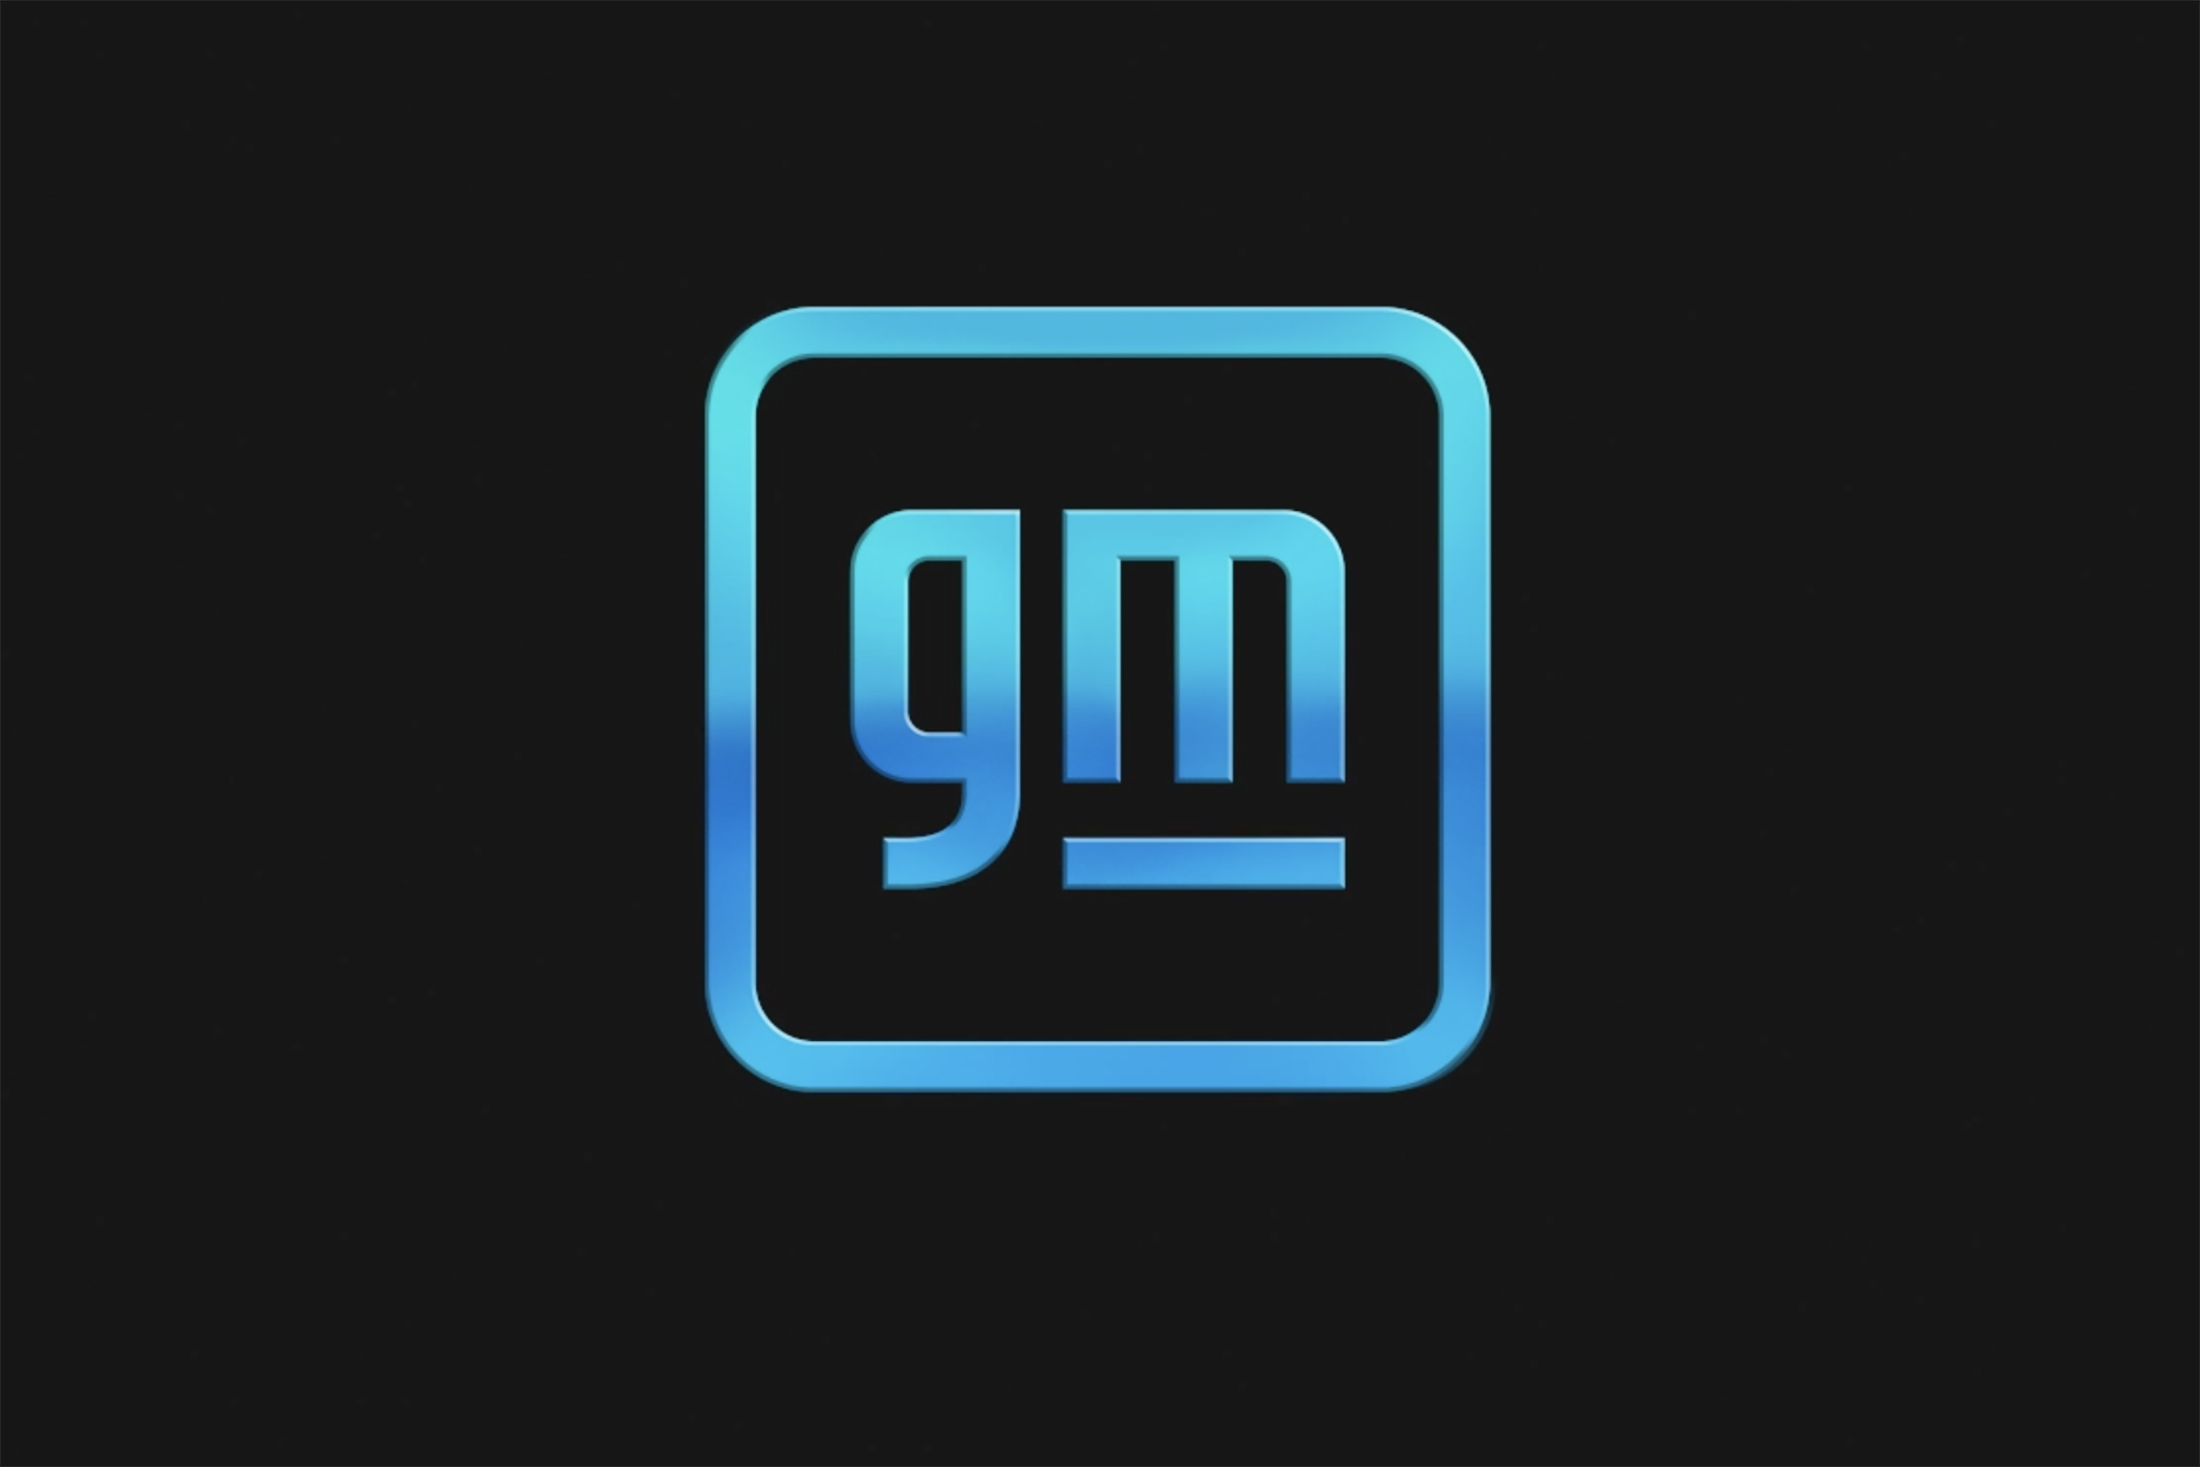 New General Motors (GM) logo